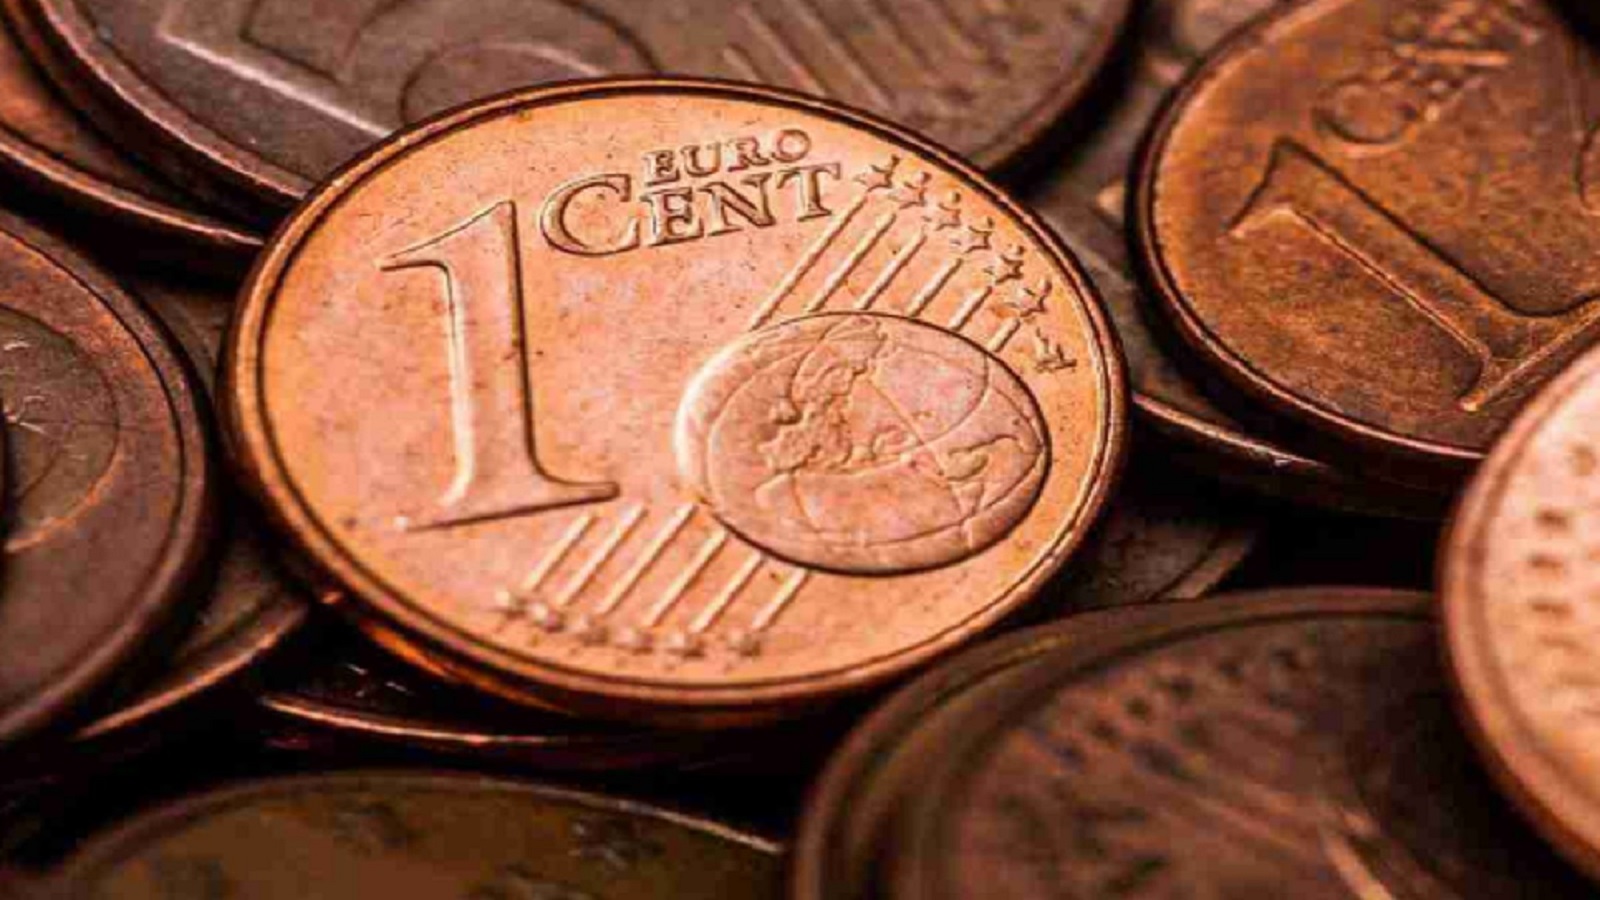 Esamina i parametri chiave che influenzano il valore delle monete da 1 centesimo, tra cui errori, raffigurazioni e condizioni di conservazione